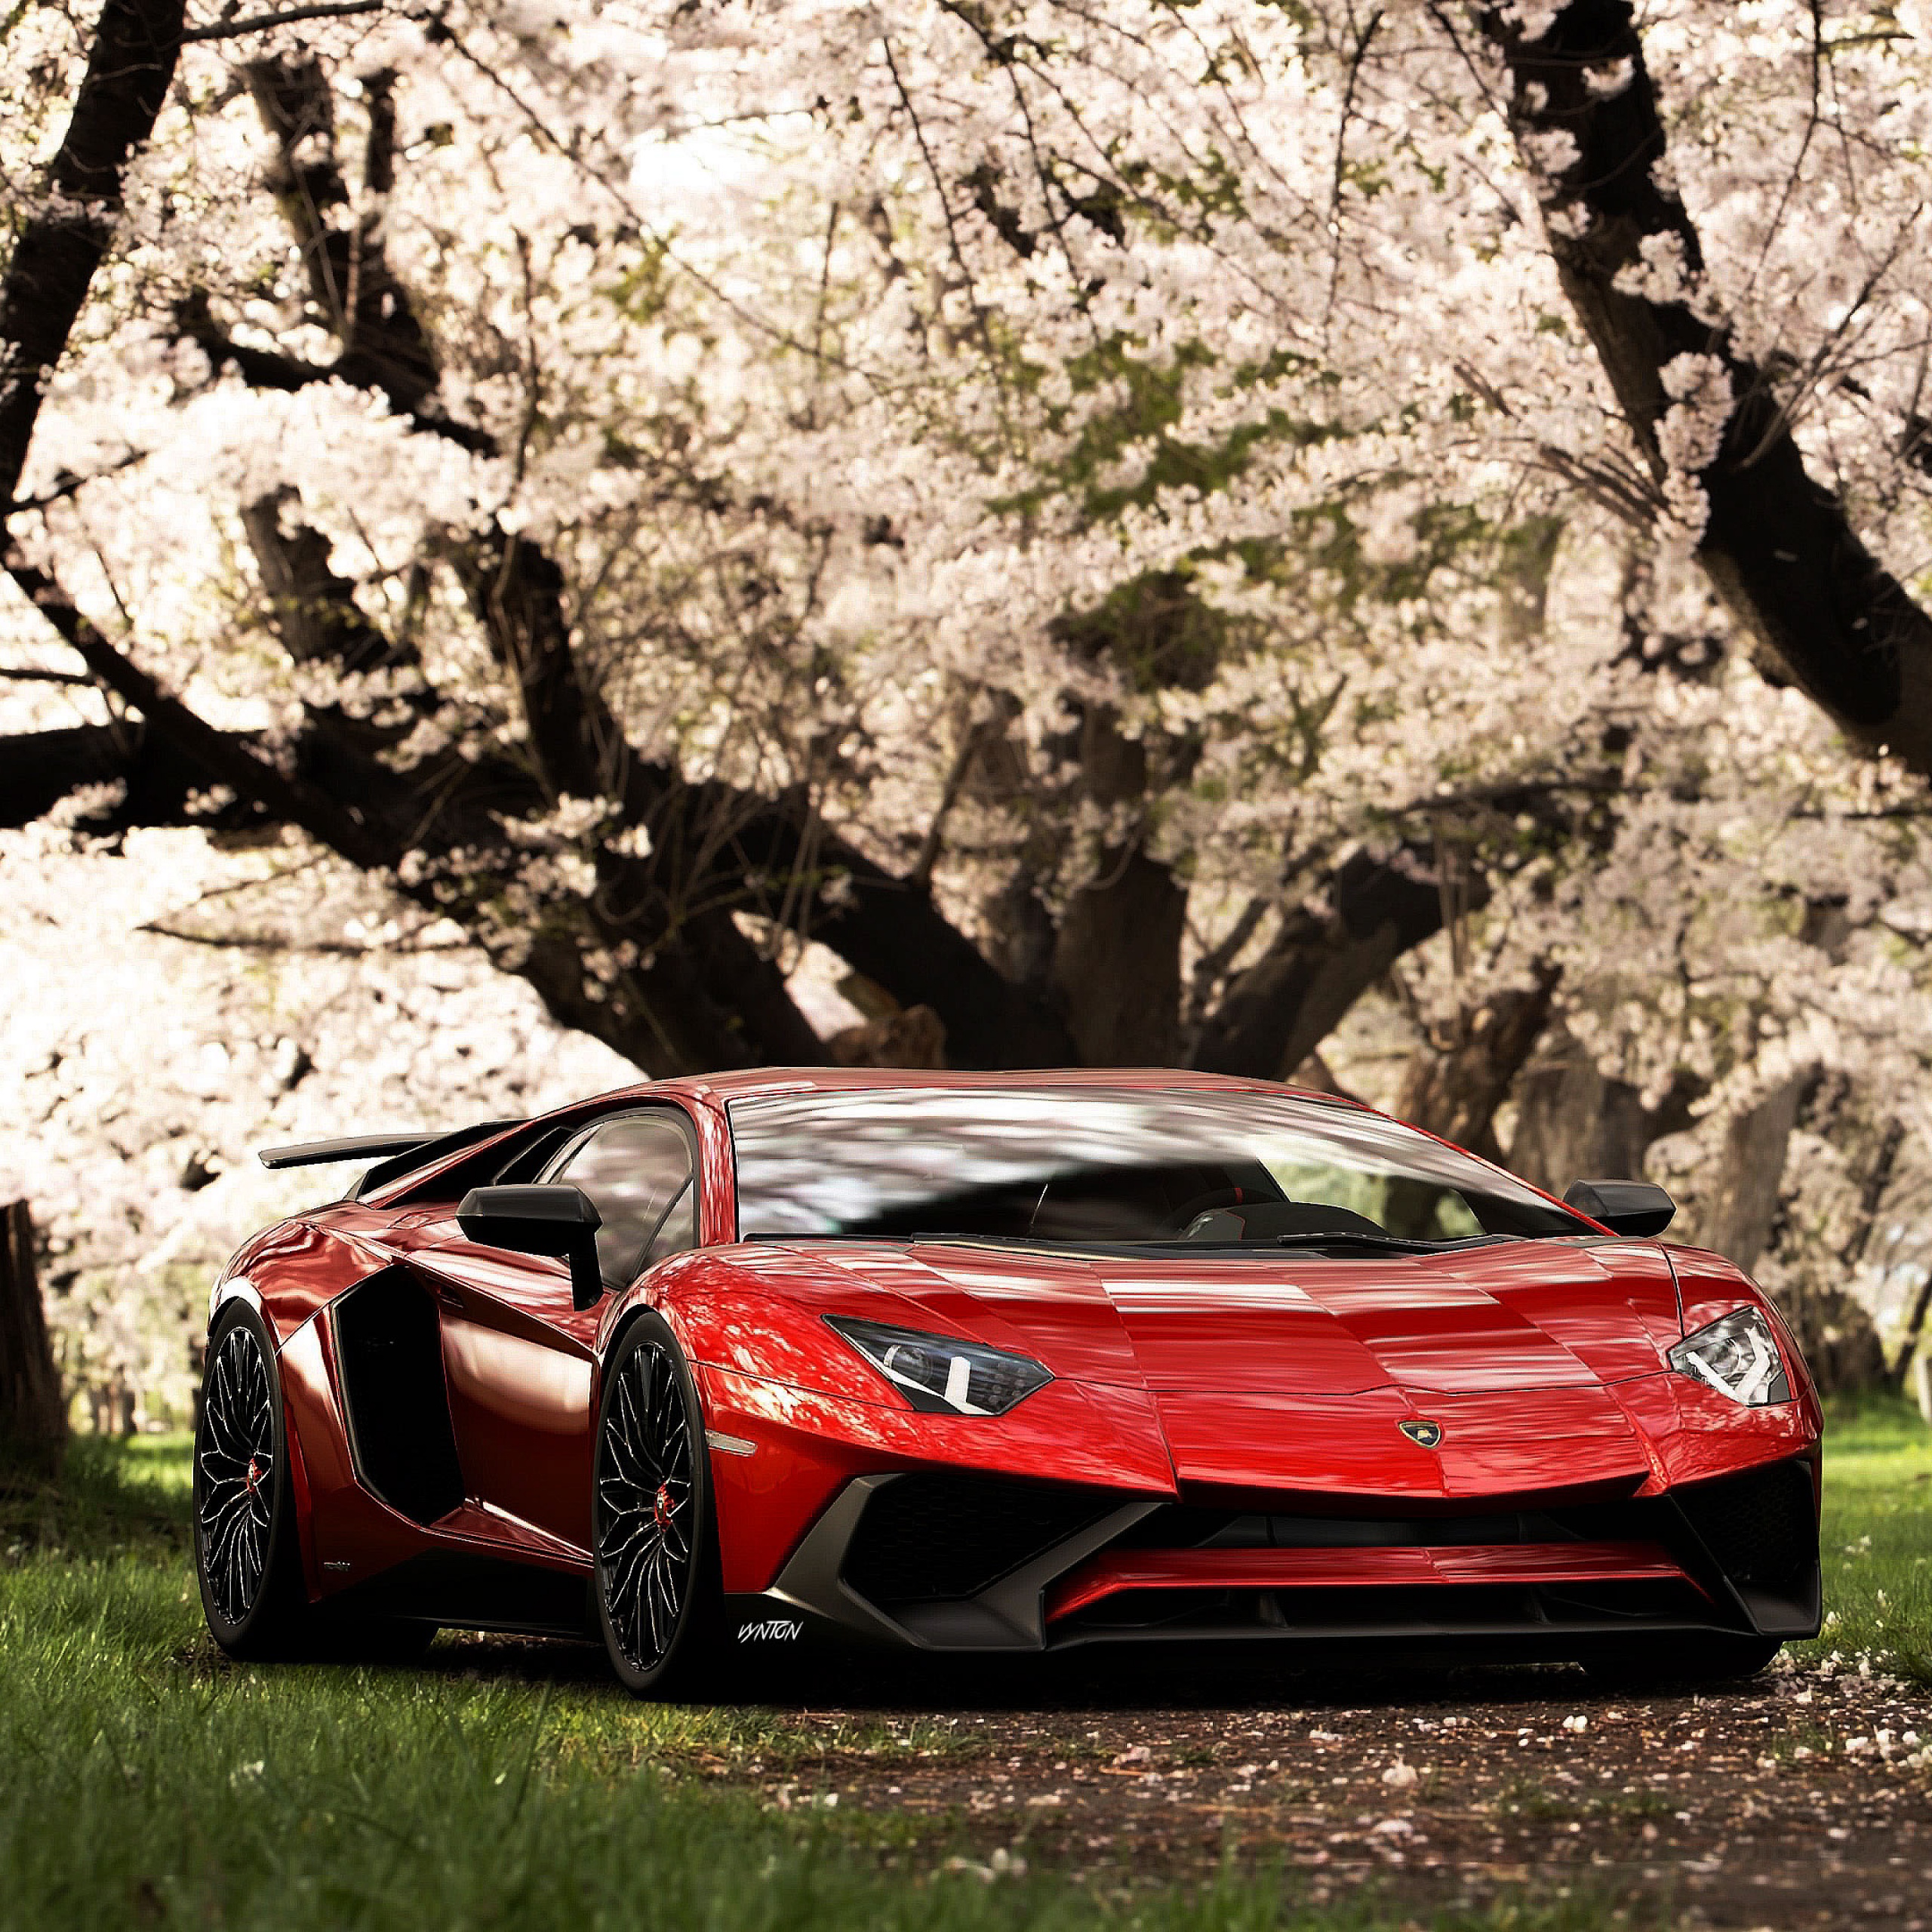 Lamborghini Aventador SV Wallpaper 4K, Cherry trees, Cars, #1411